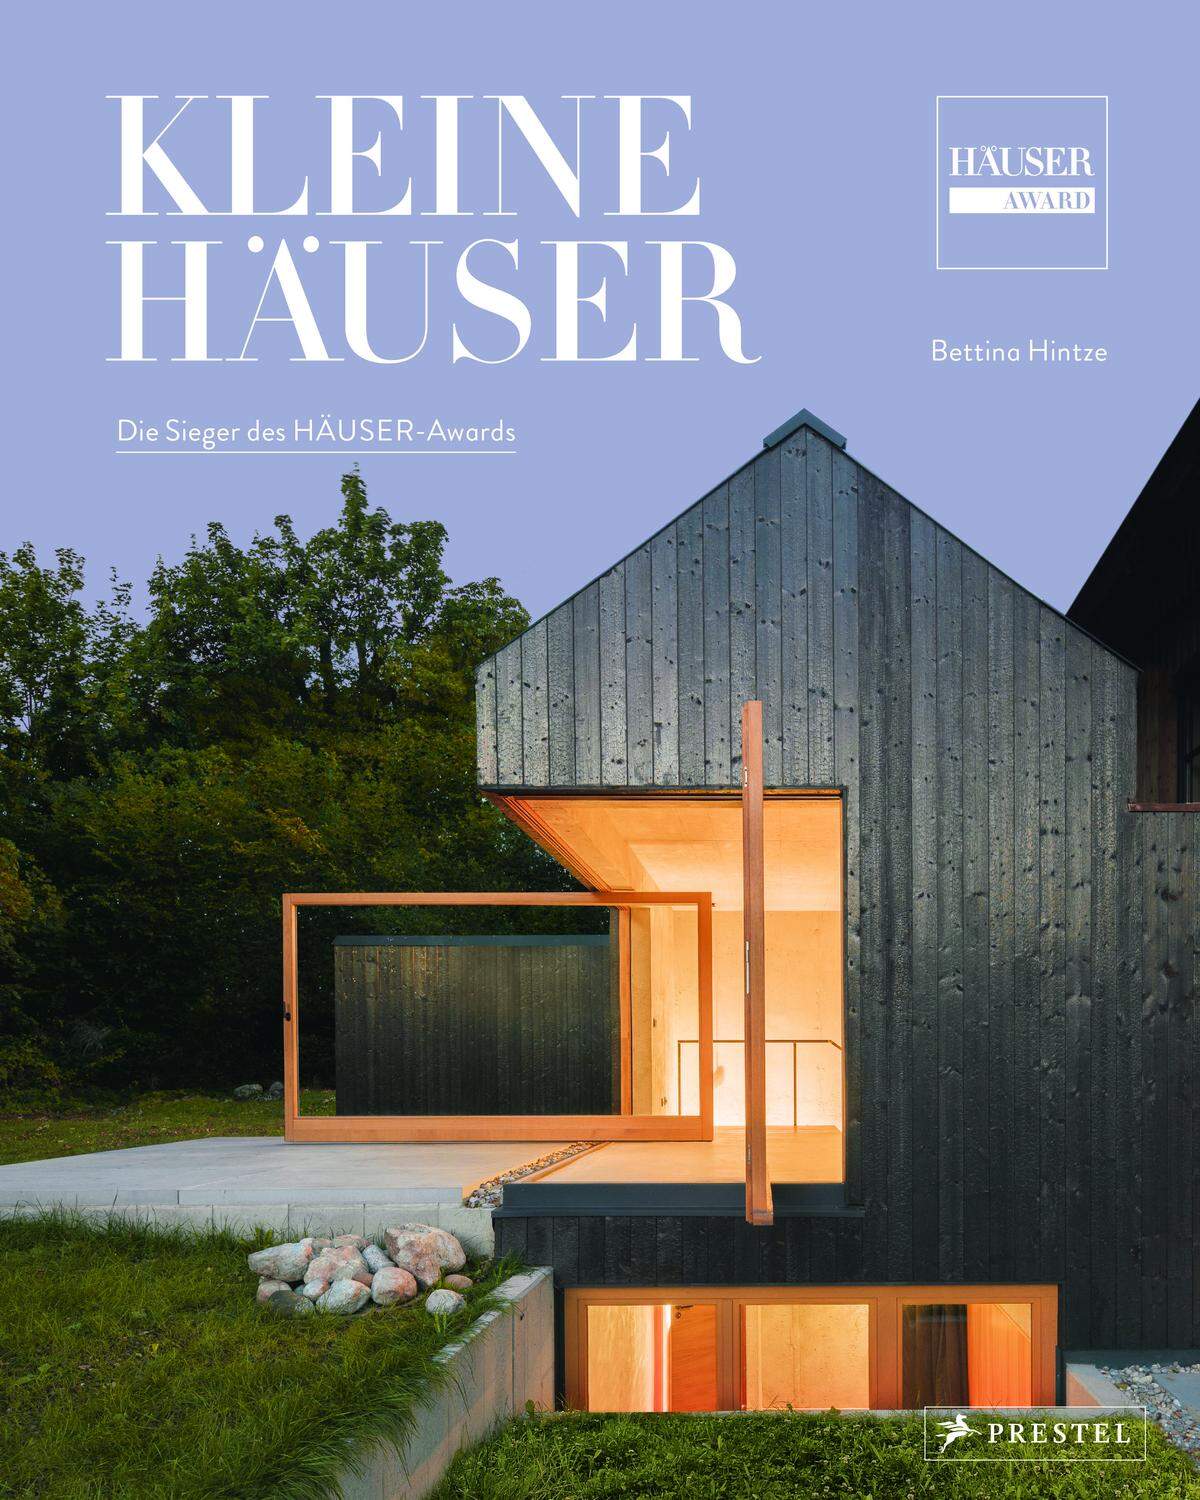 Das Buch "Kleine Häuser" von Bettina Hintze präsentiert die Sieger des HÄUSER-Awards, ist am 2. März im Prestel Verlag erschienen und im Handel erhältlich.